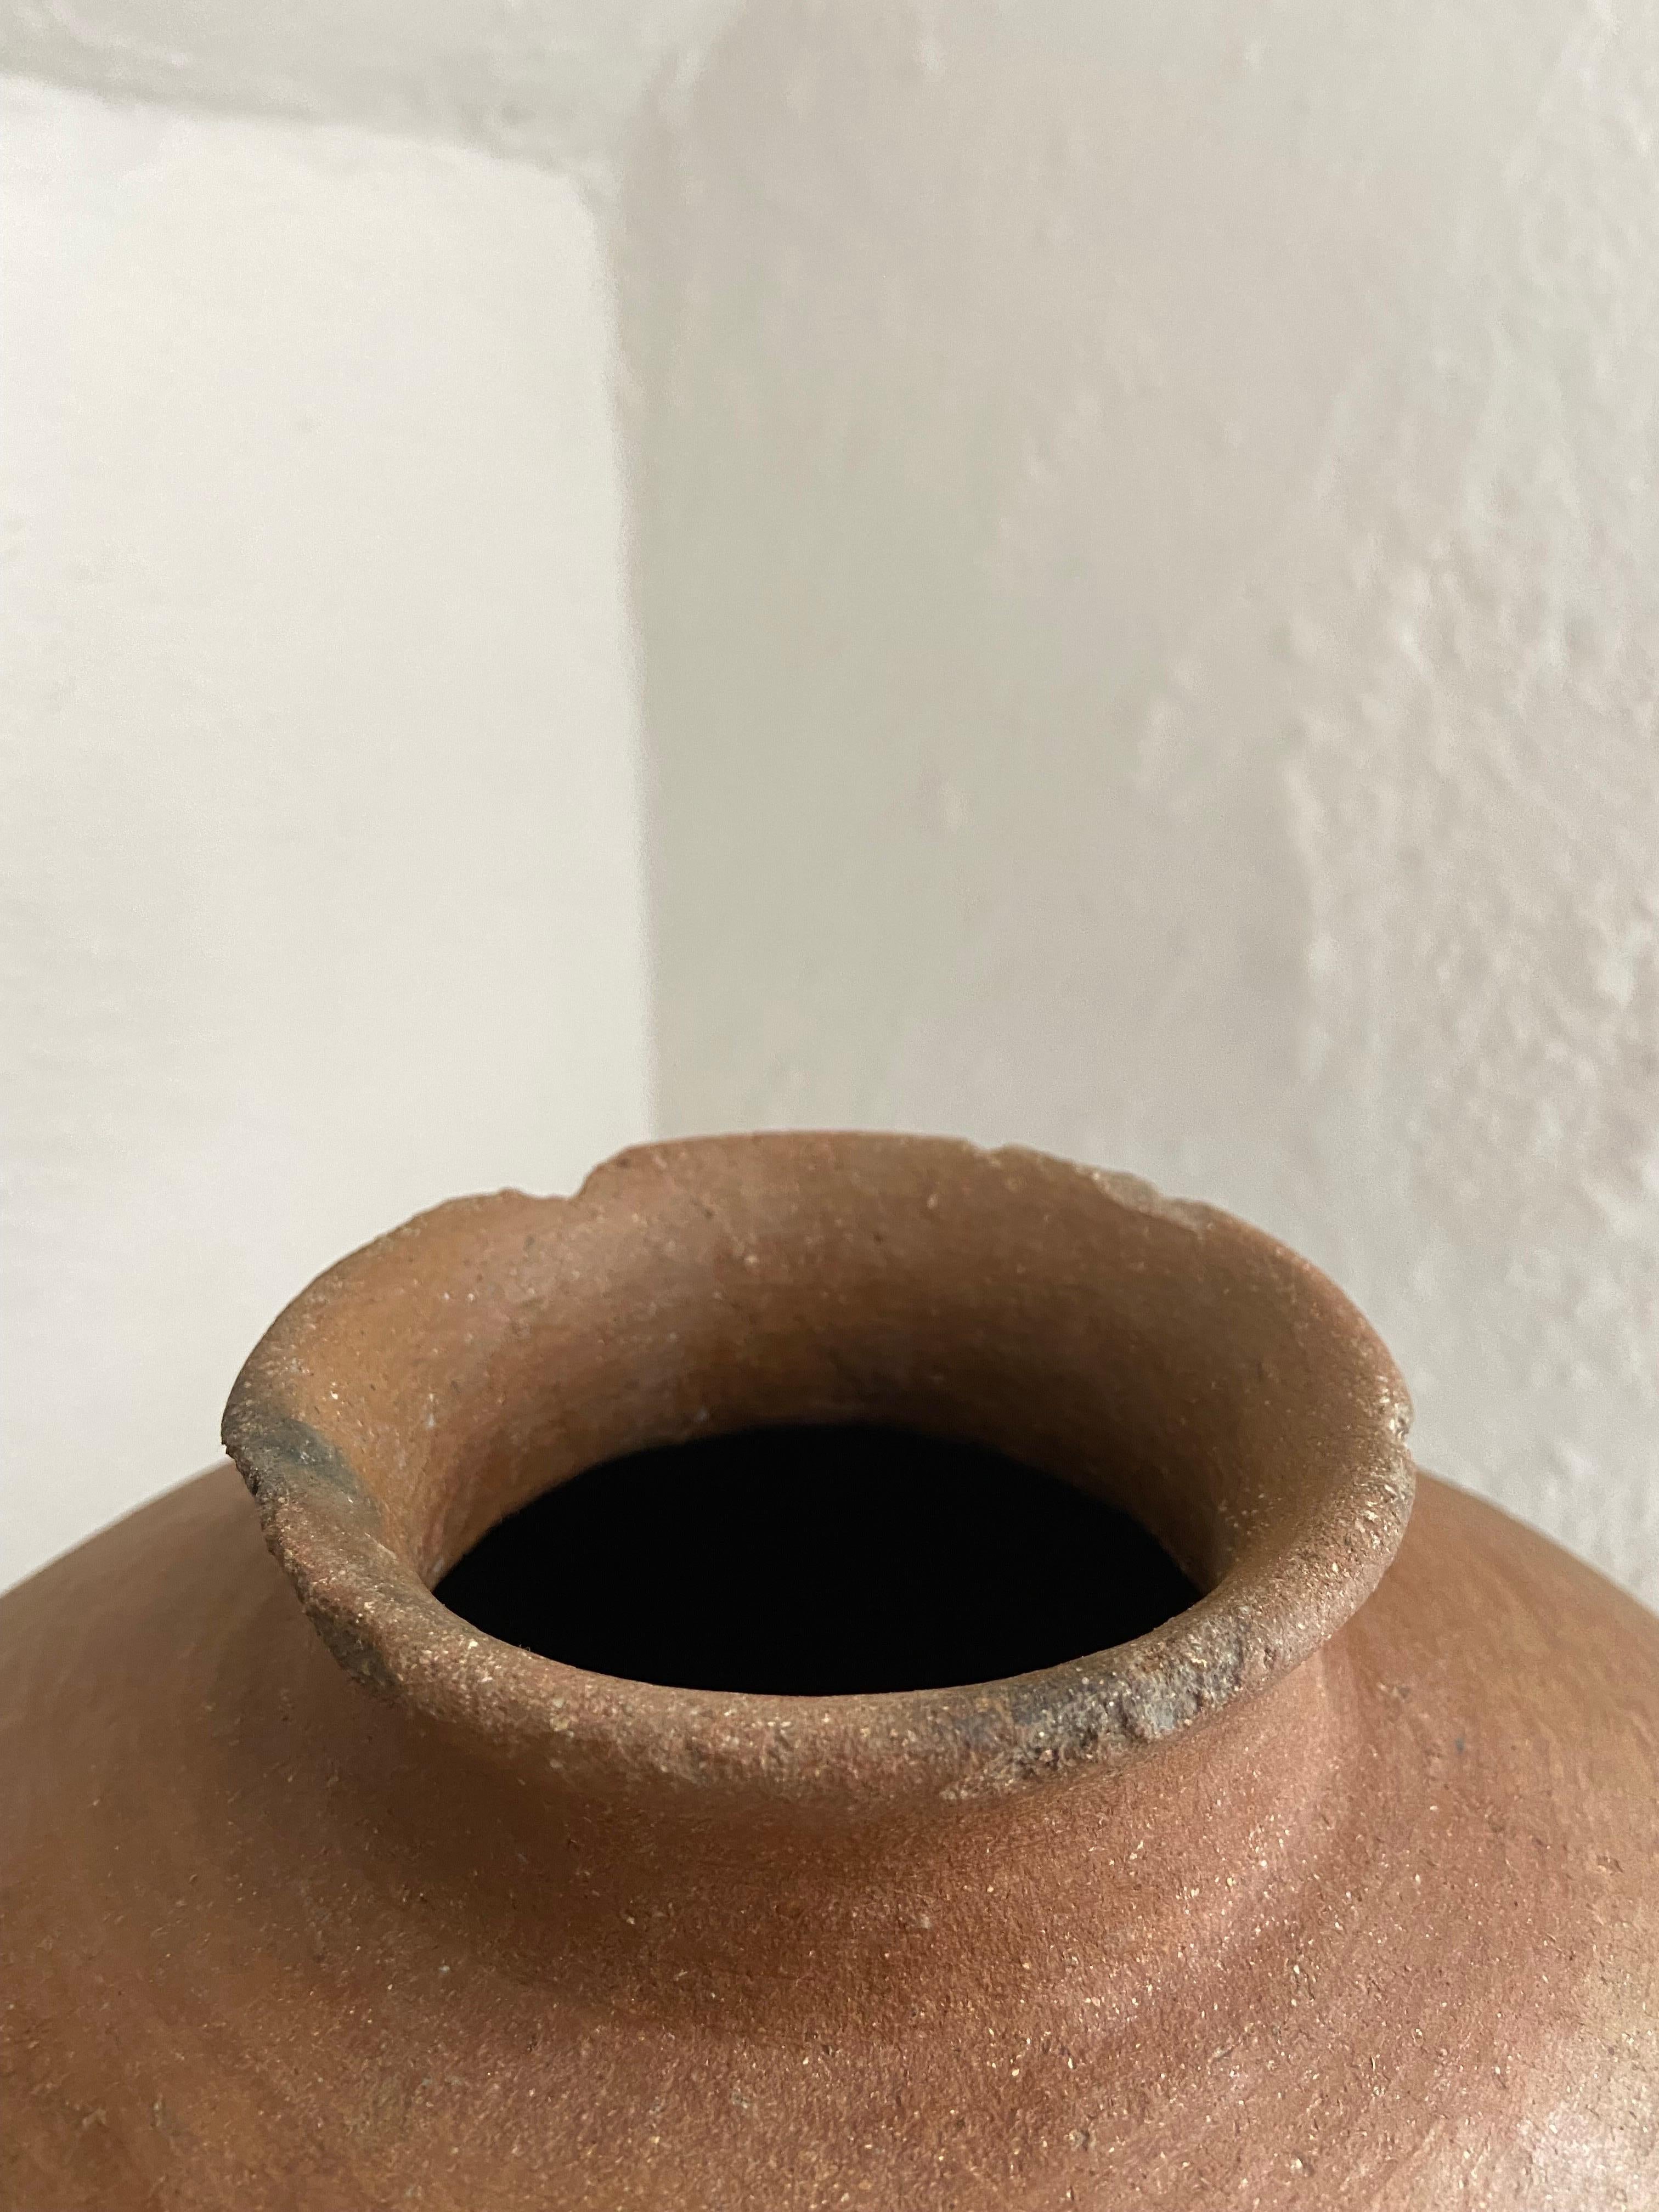 Mid-20th Century Terracotta Pot From The Mixteca Region Of Oaxaca, Mexico, Circa 1940's